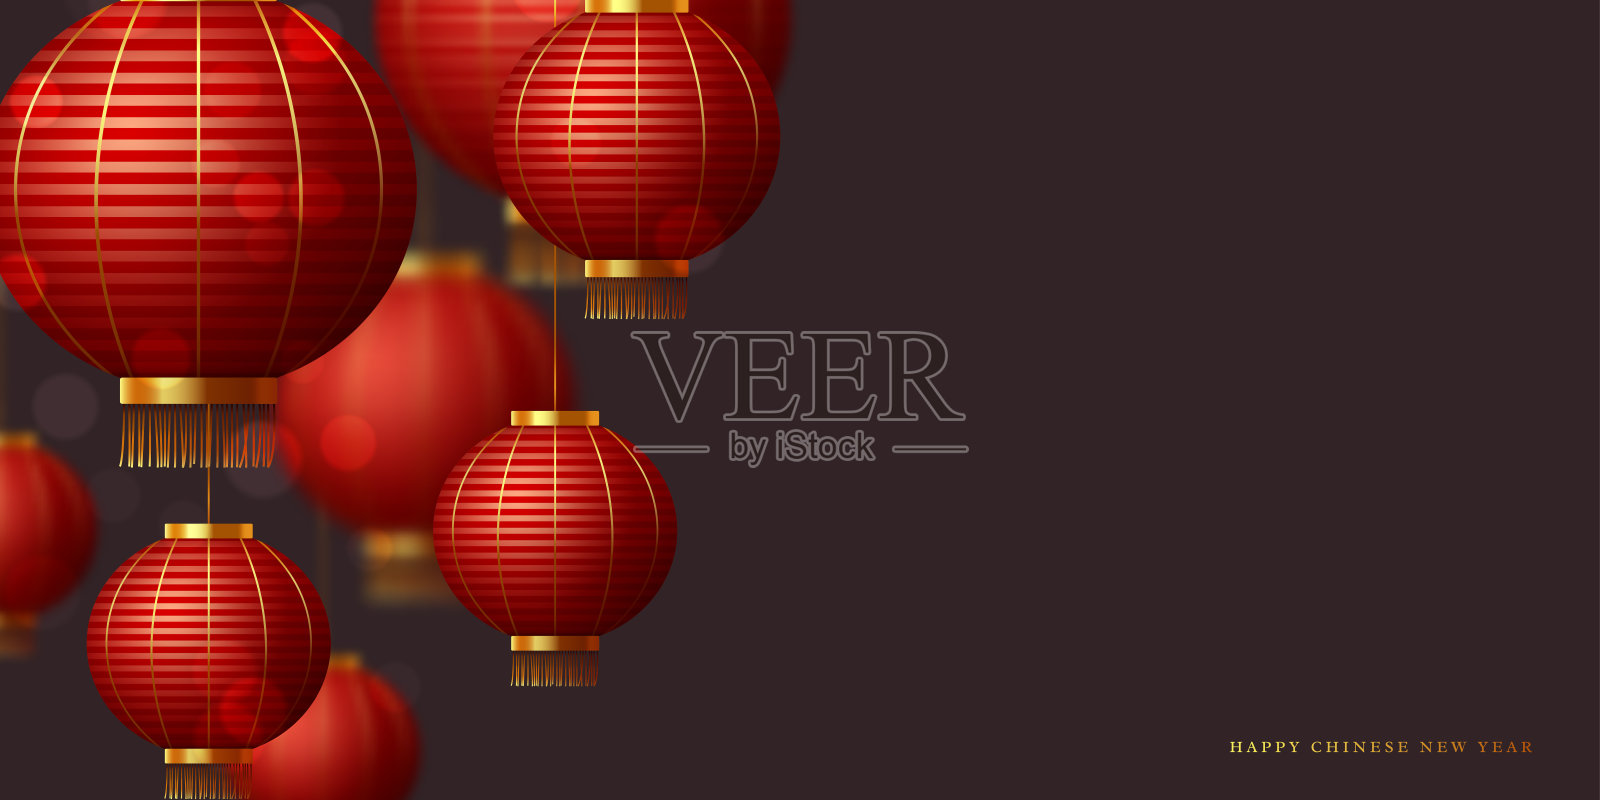 中国的红灯笼。插画图片素材